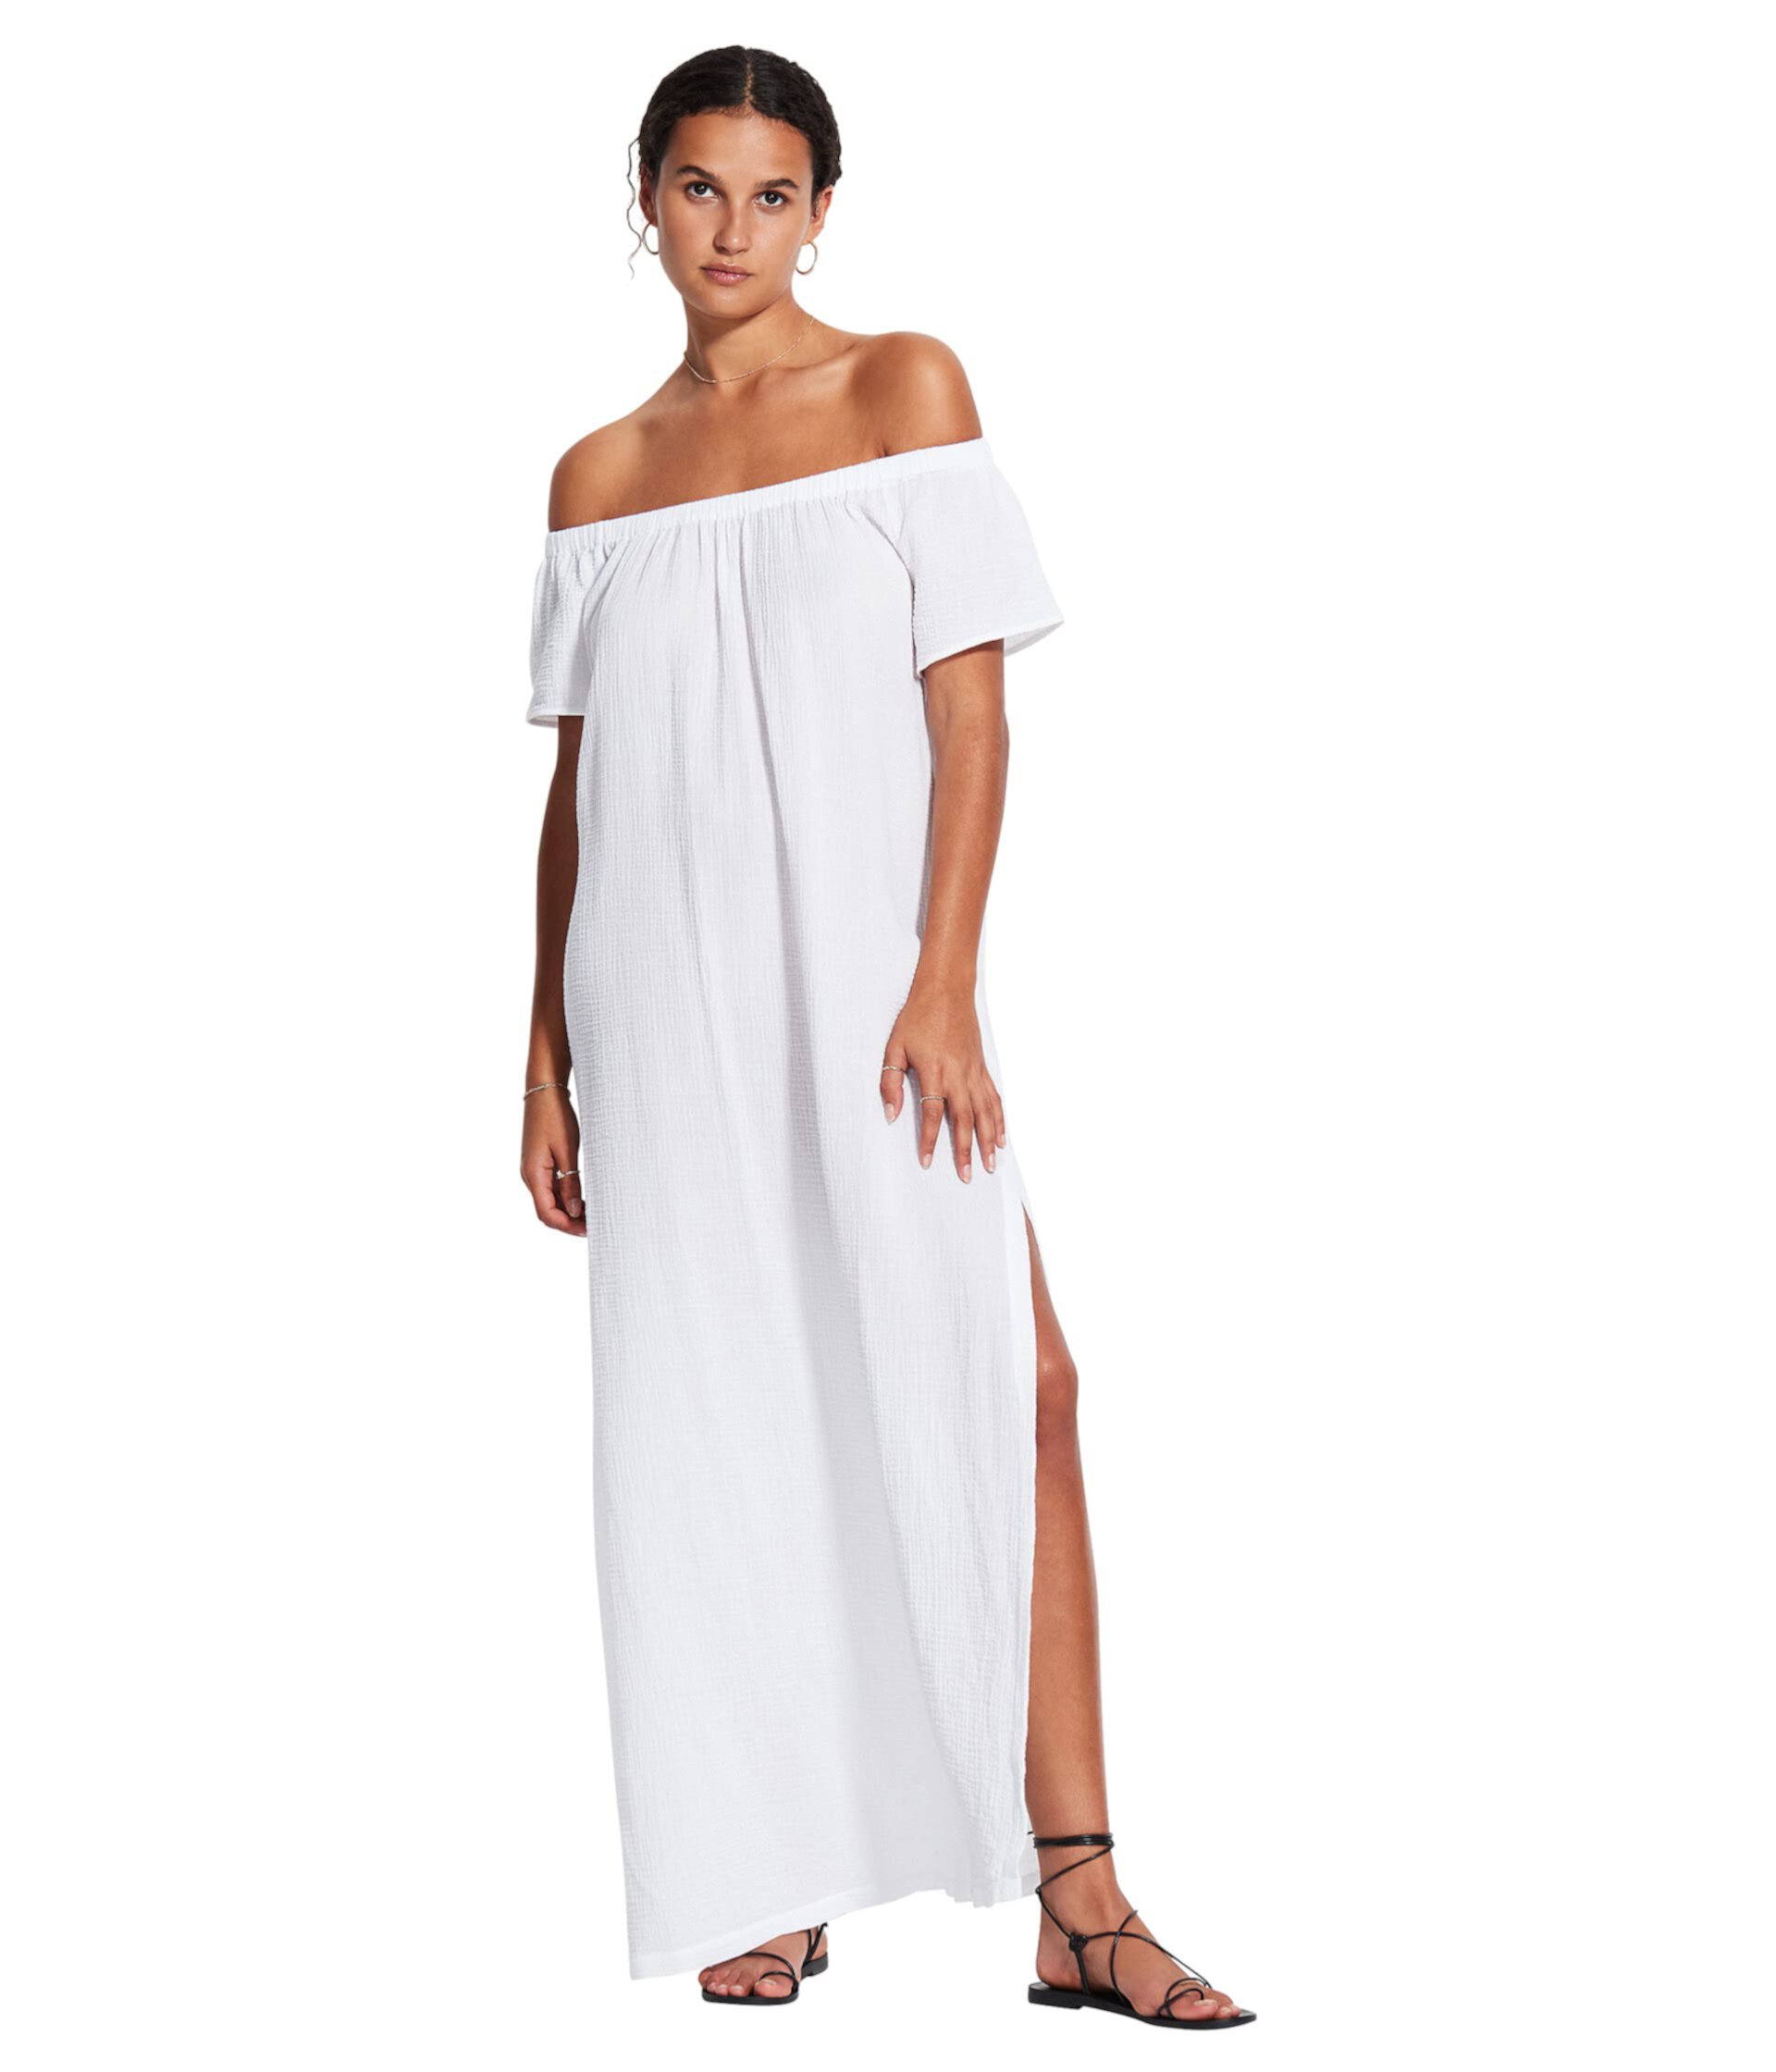 Пляжное платье без бретелек из двойной ткани Seafolly